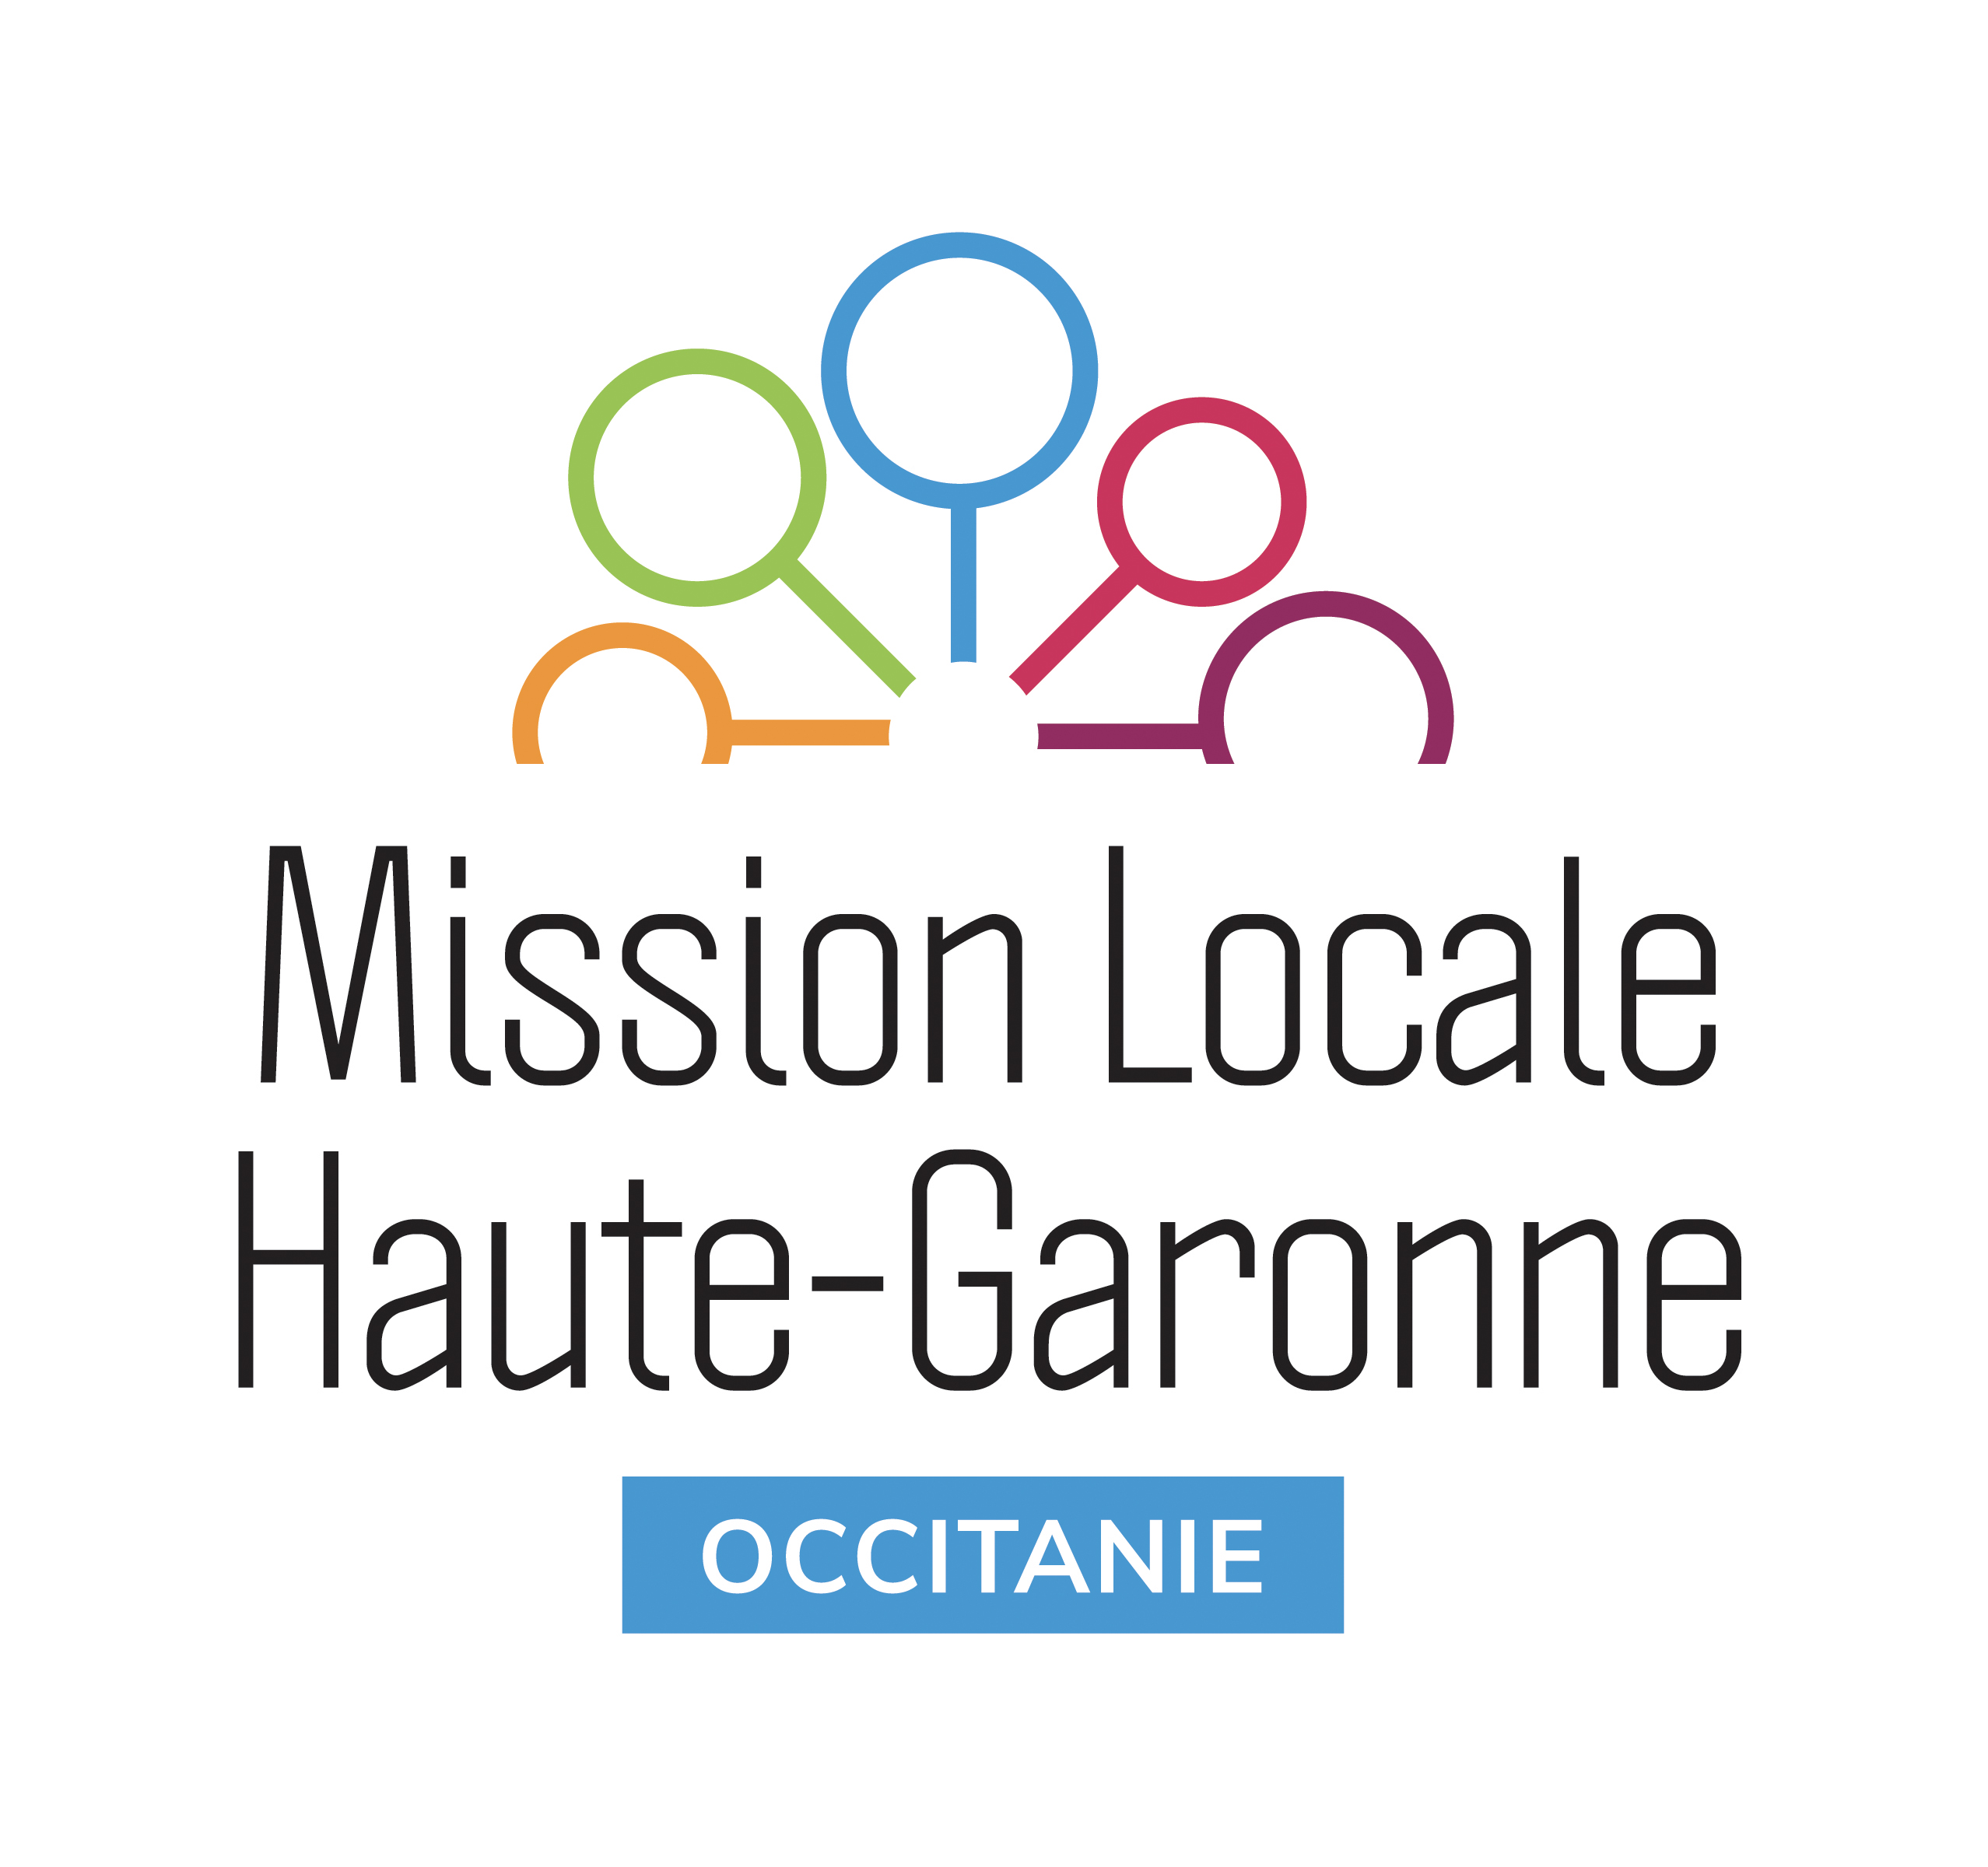 Mission Locale Haute-Garonne